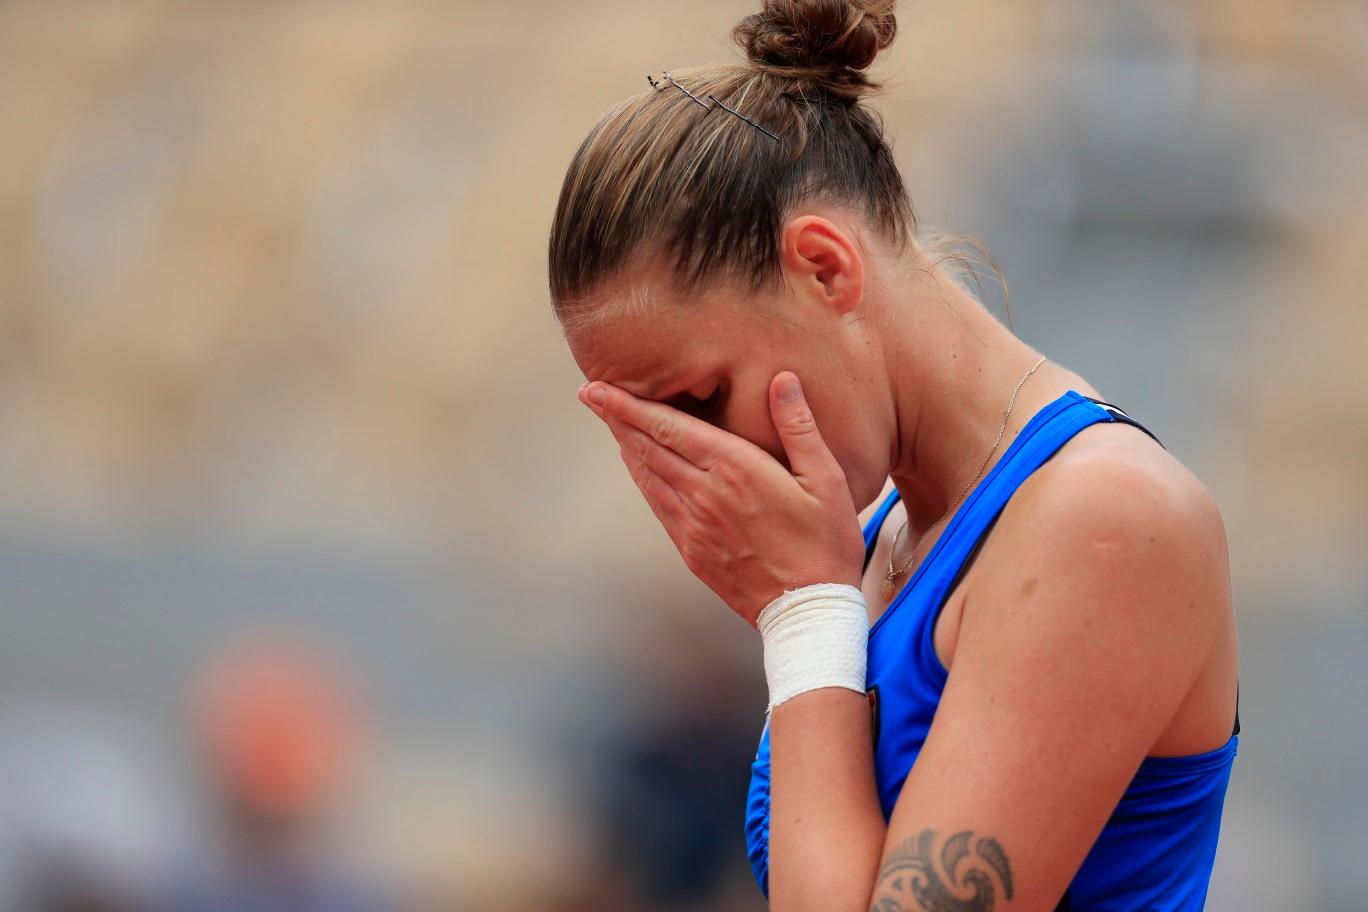 Martic Shocks Pliskova At Roland Garros